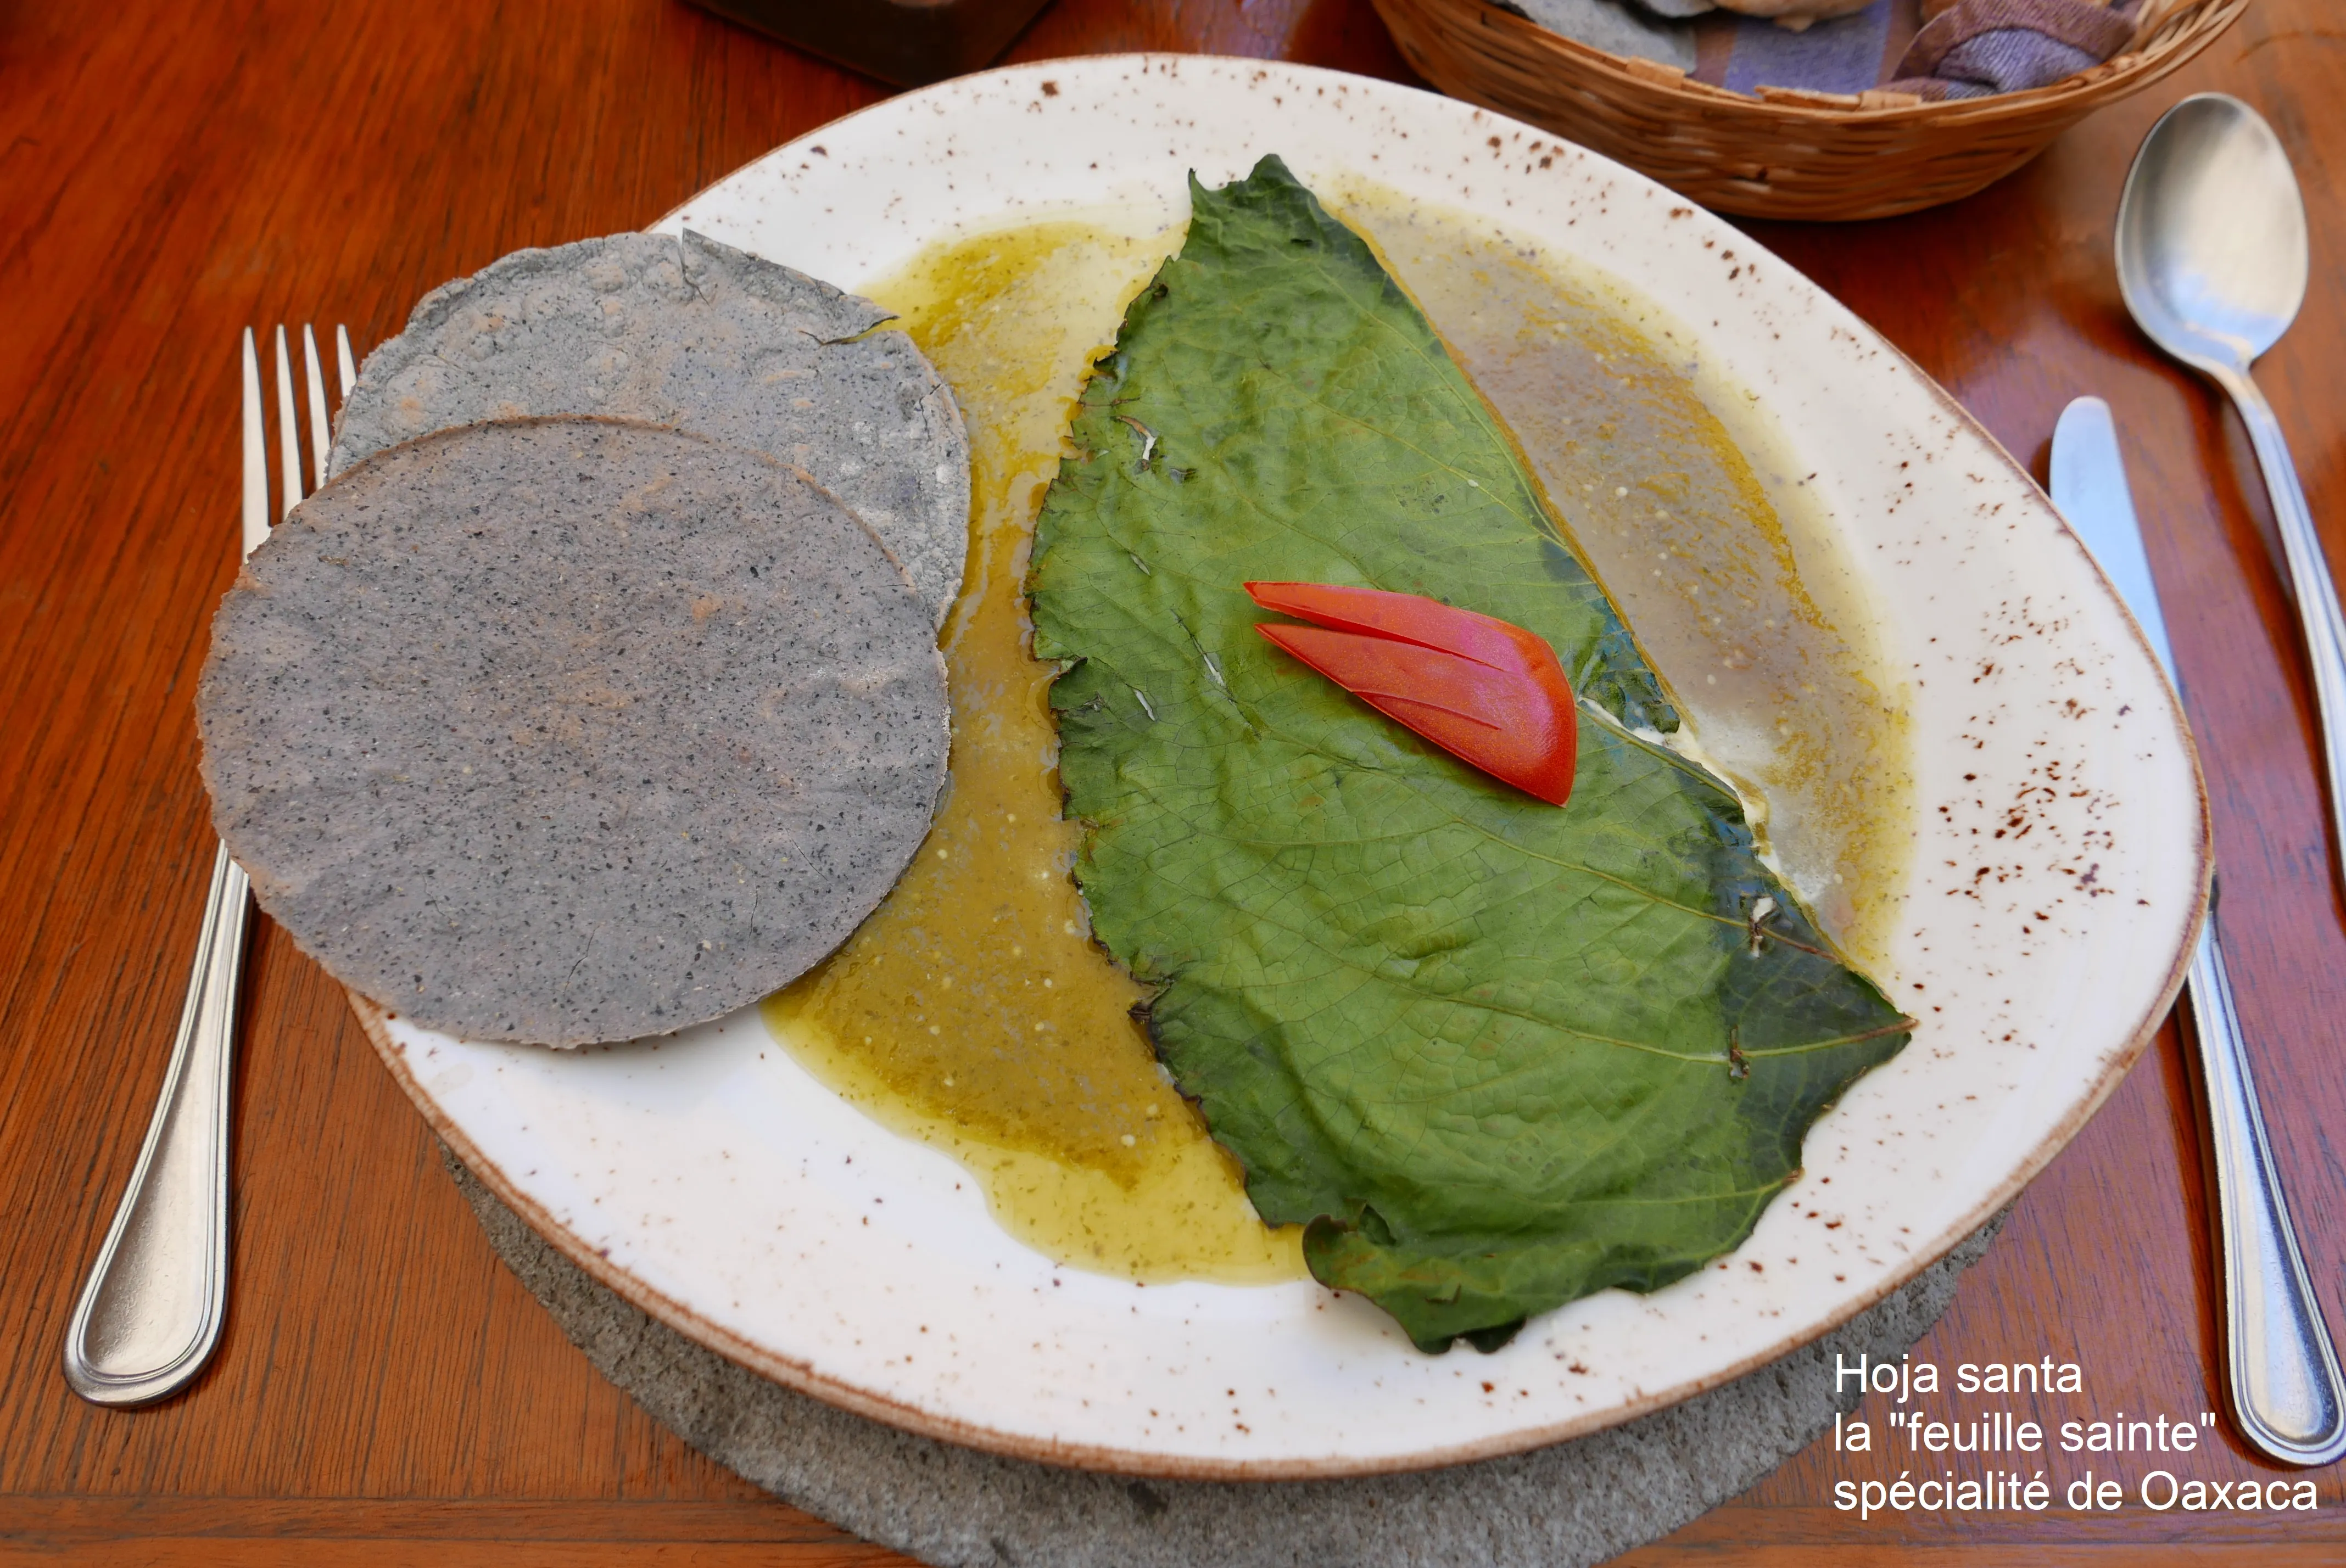 La hoja santa, une spécialité de Oaxaca. Photo © Marc Rigole